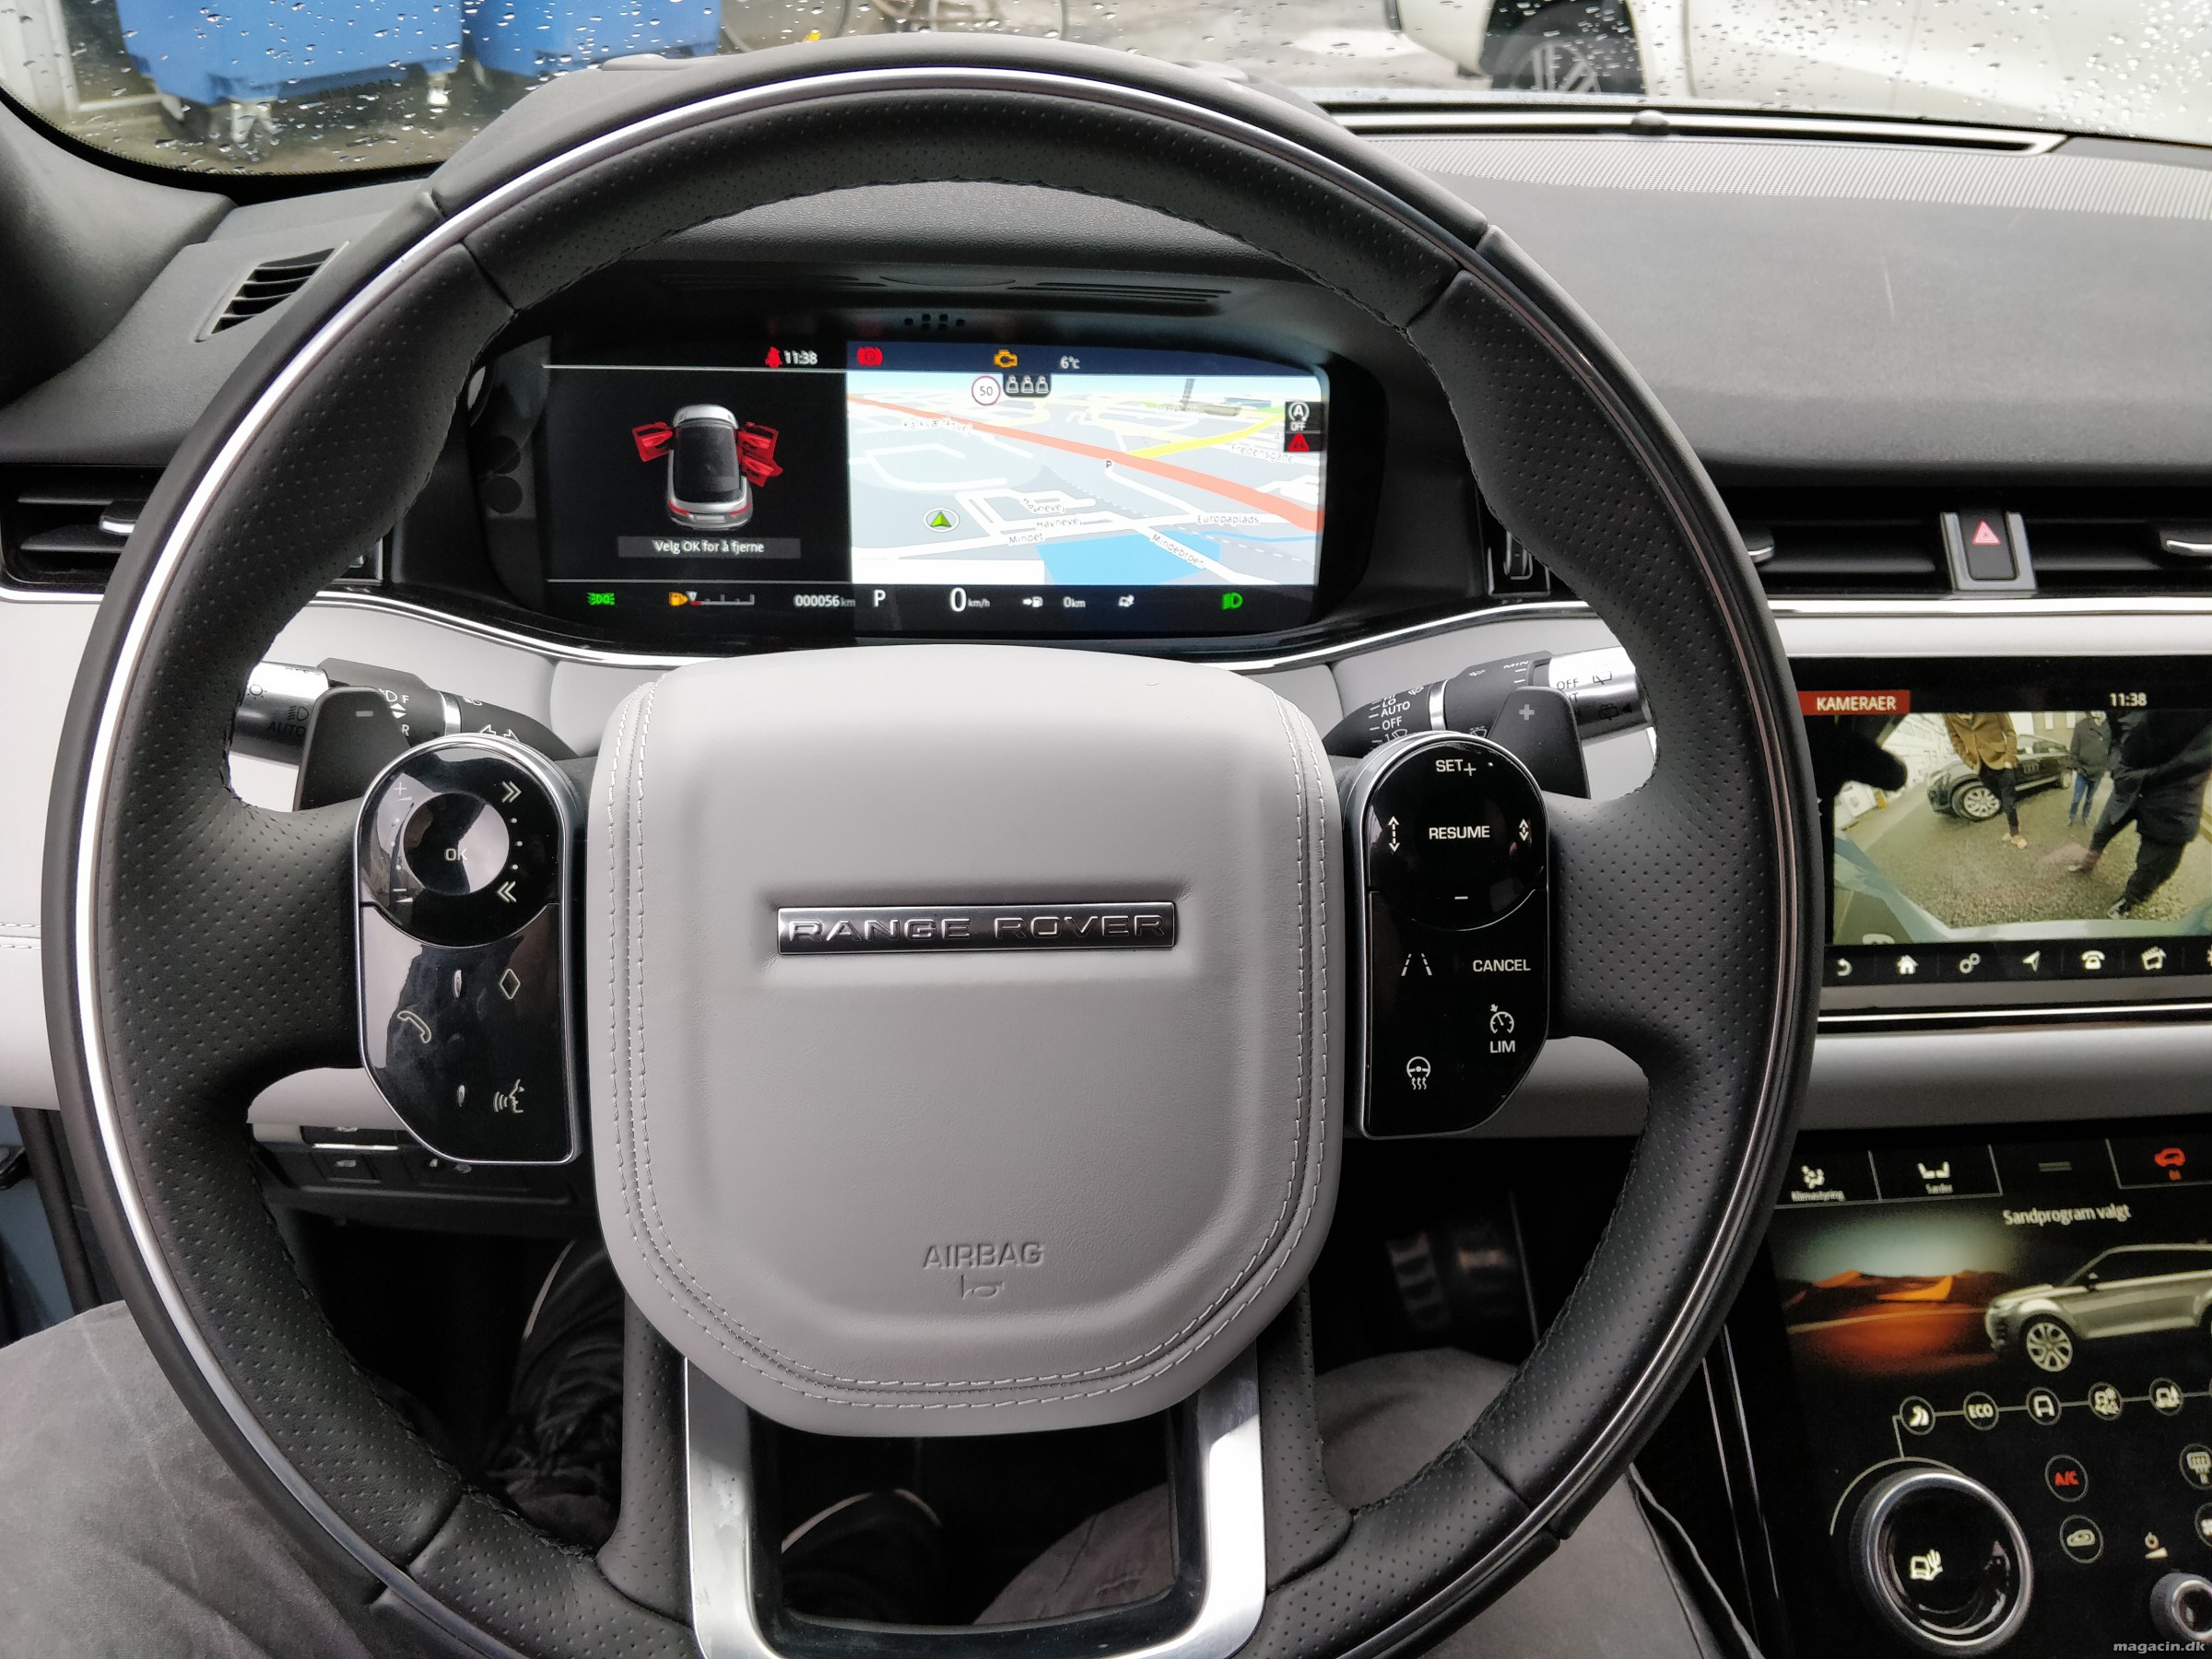 Smugkig: Her er den nye Land Rover Evoque